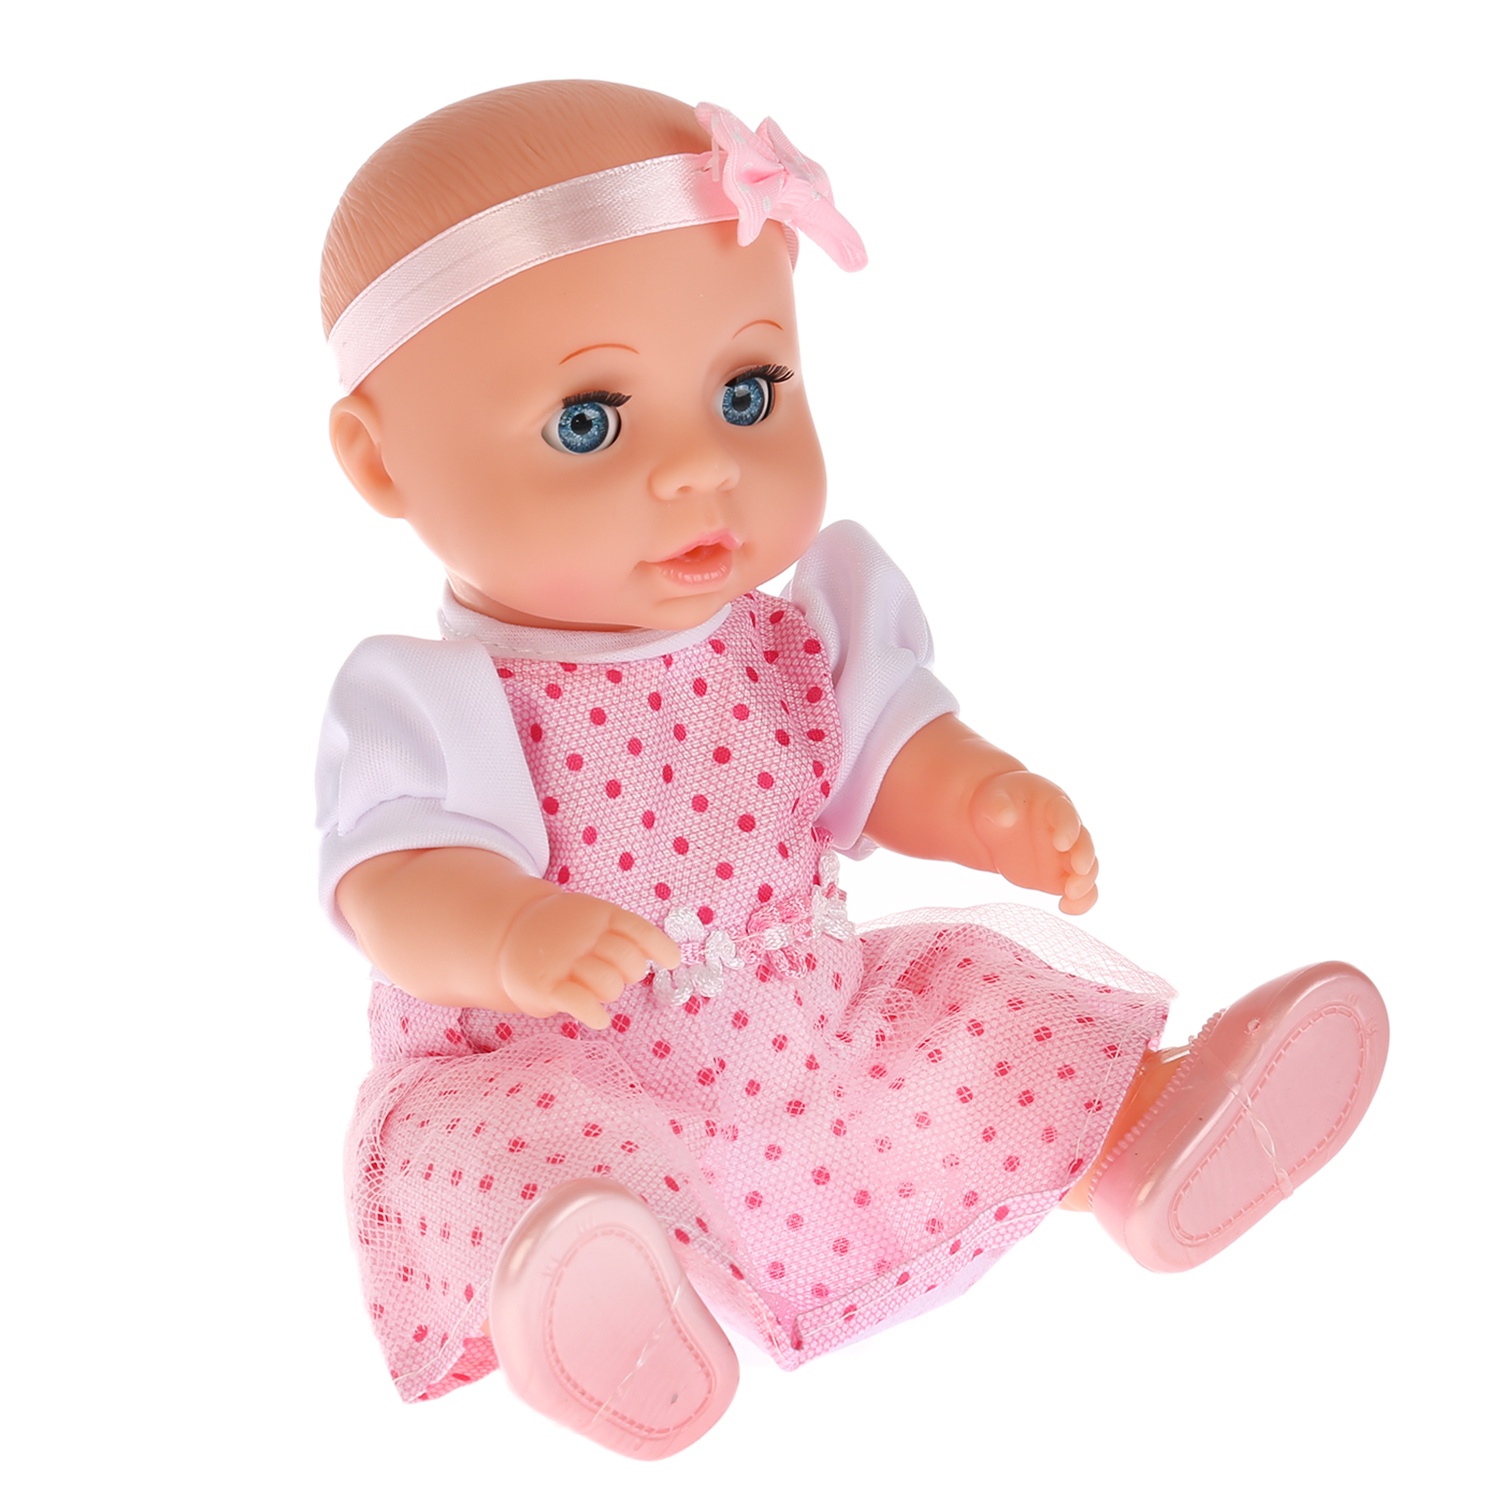 Детская кукла пупс. Интерактивный пупс Карапуз, 20 см, y20dp-BB-ru. Карапузик кукла. Бупсы. Резиновые куклы для детей.